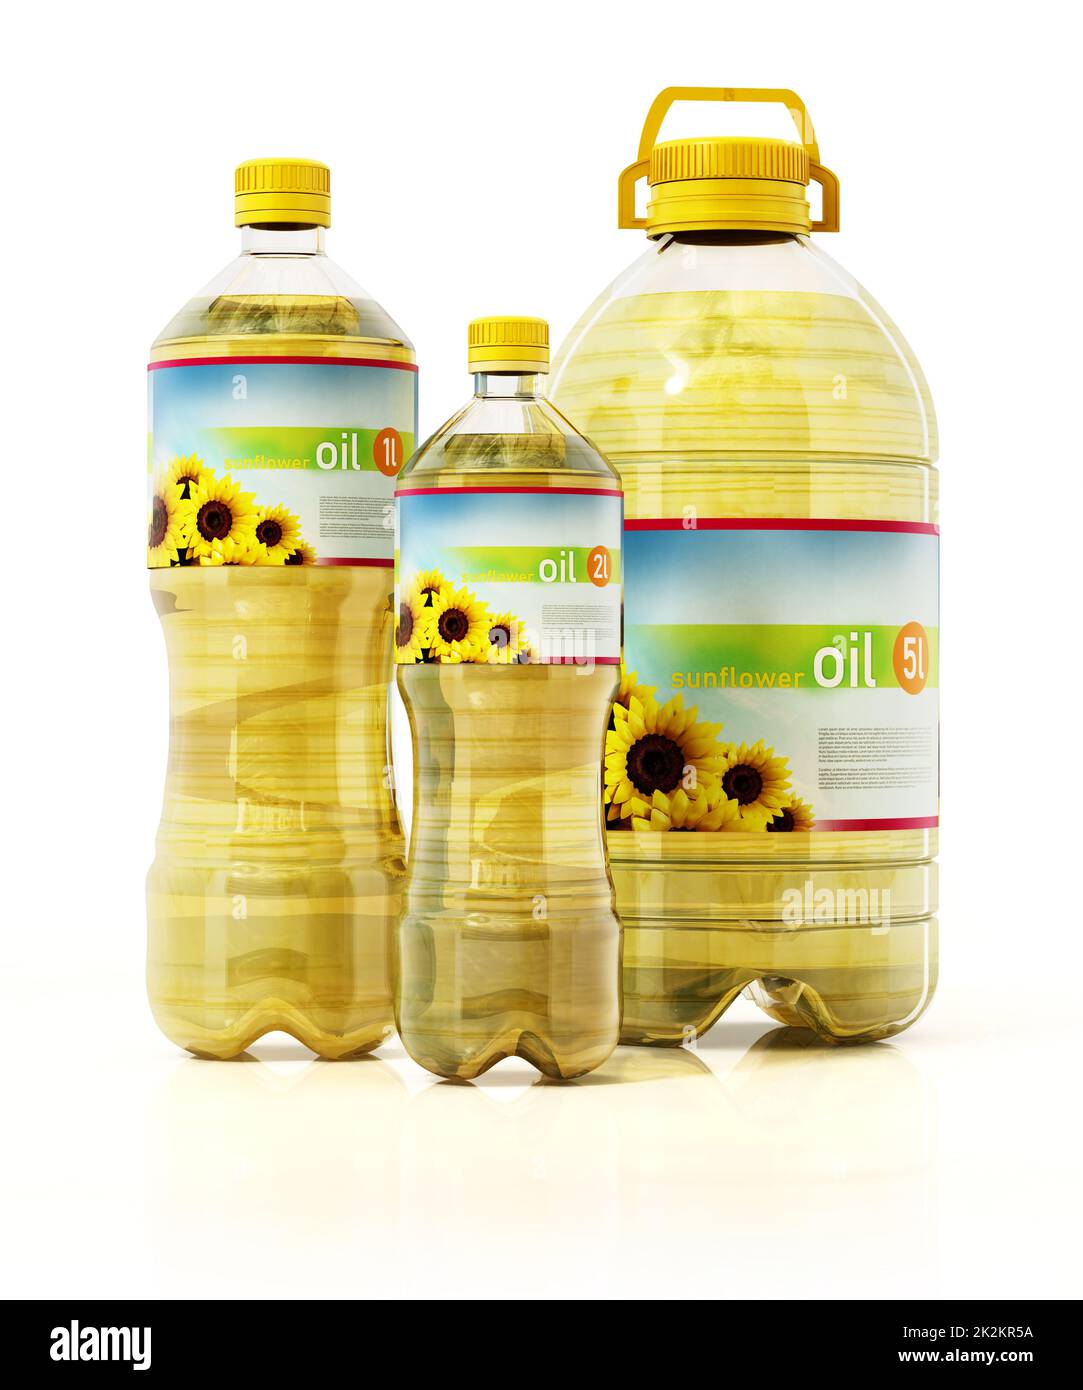 Bouteilles d'huile de tournesol avec étiquettes fictives isolées sur fond blanc. 3D illustration Banque D'Images